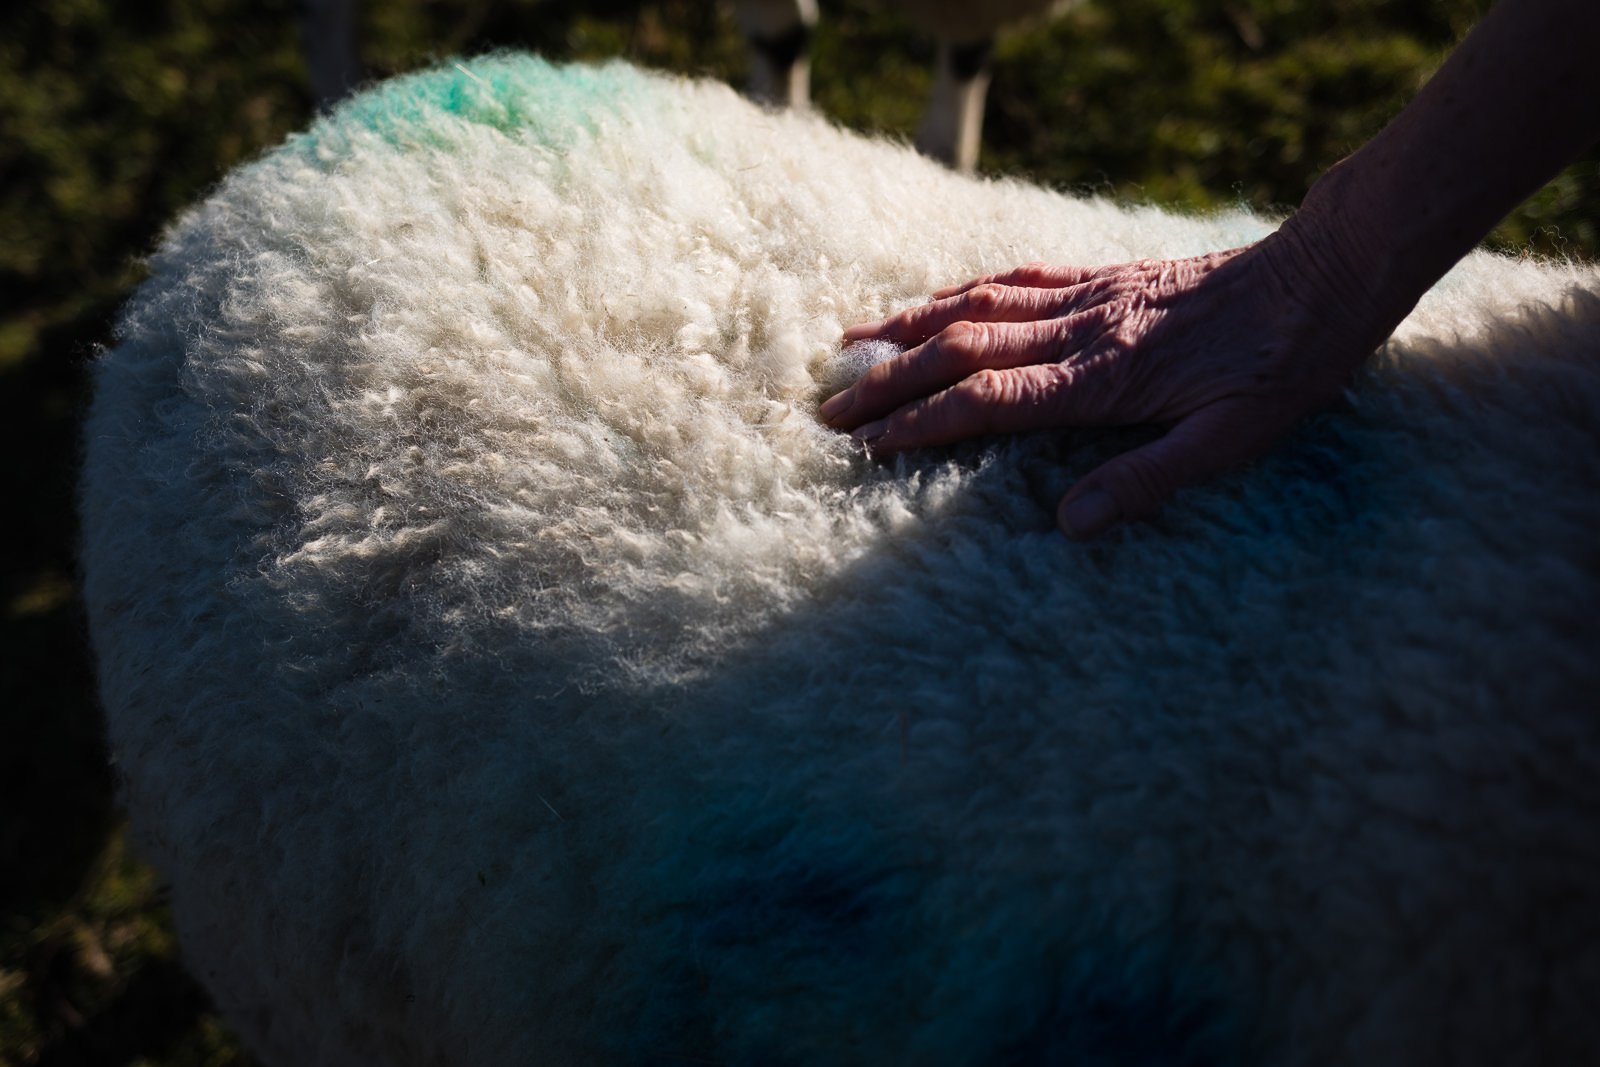 This Farming Life sheep